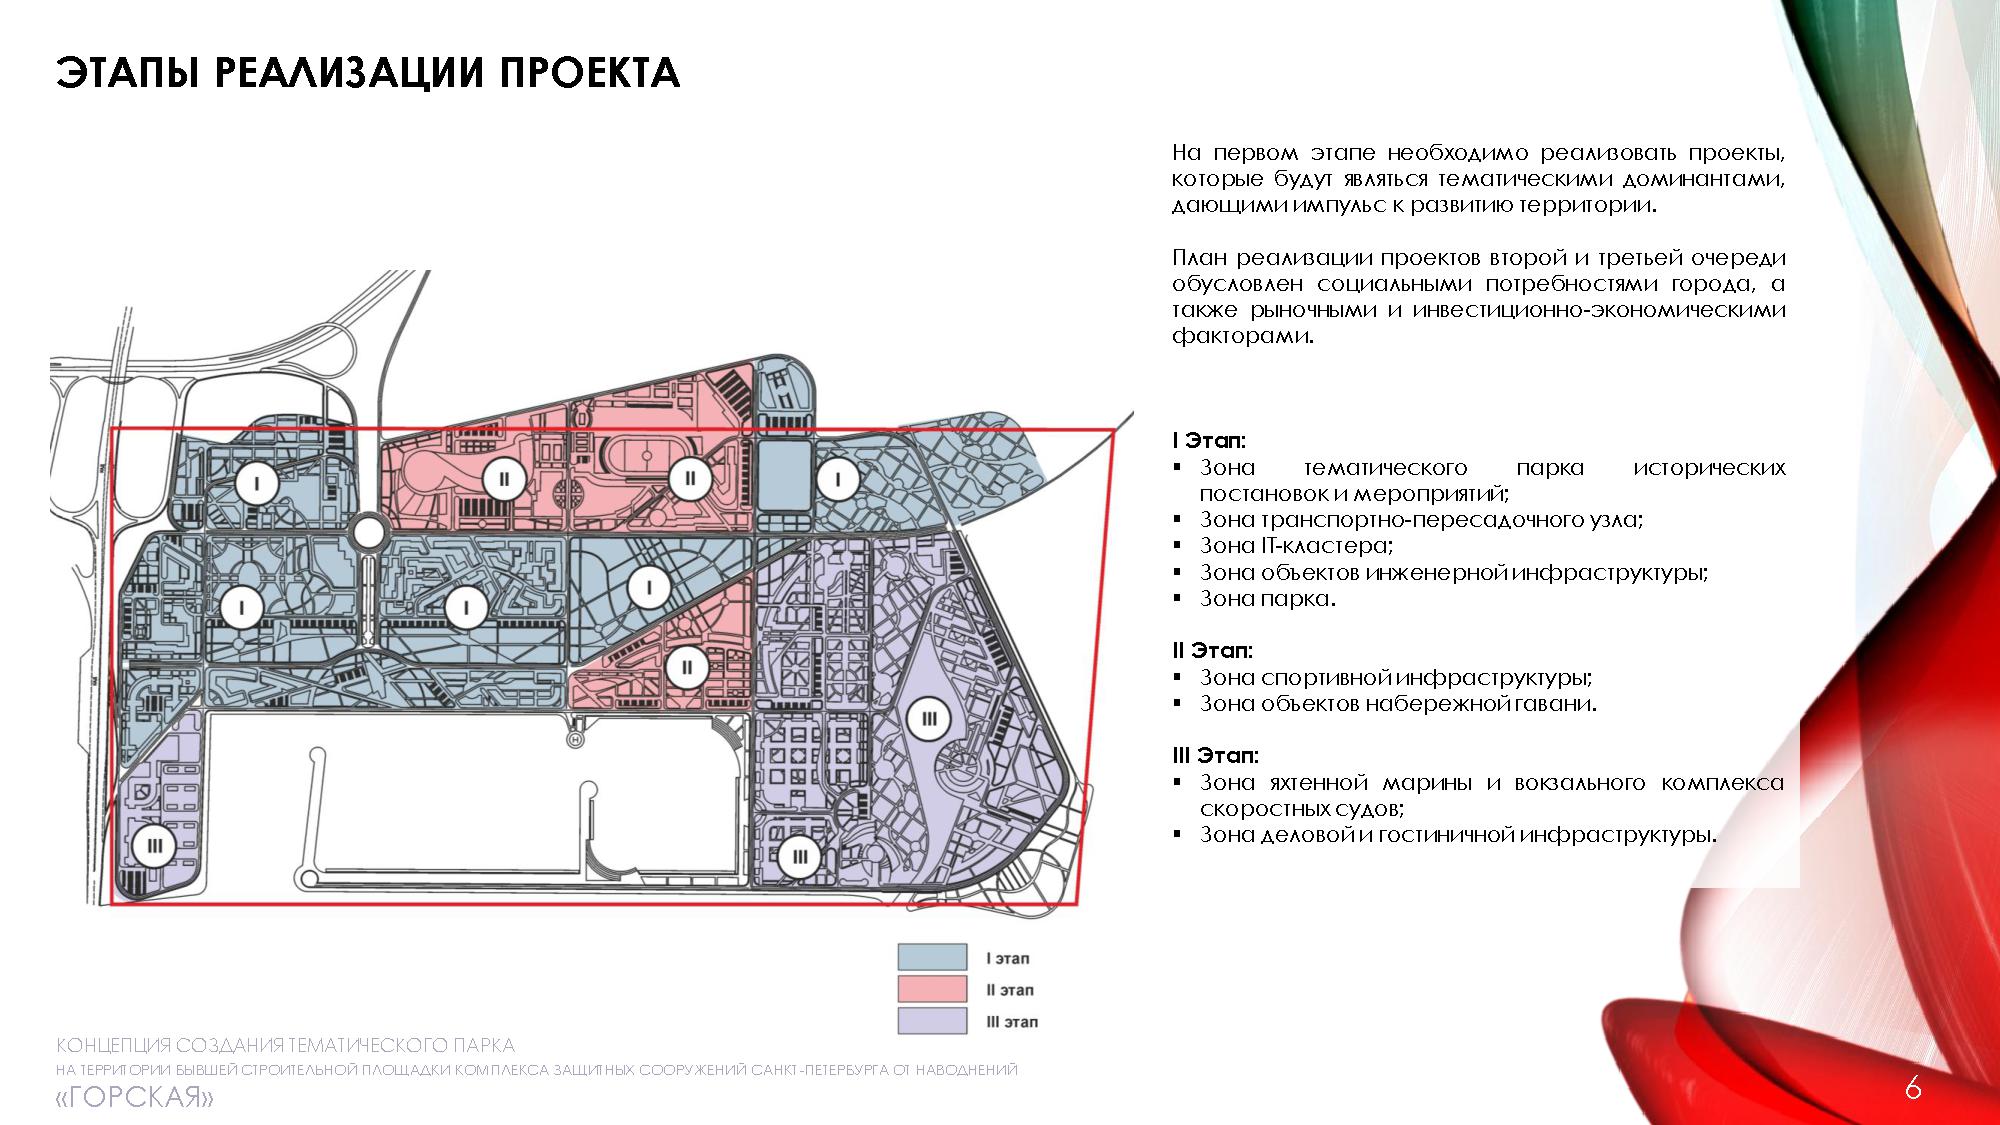 фрагмент концепции создания тематического парка на территории бывшей строительной площадки КЗС «Горская»